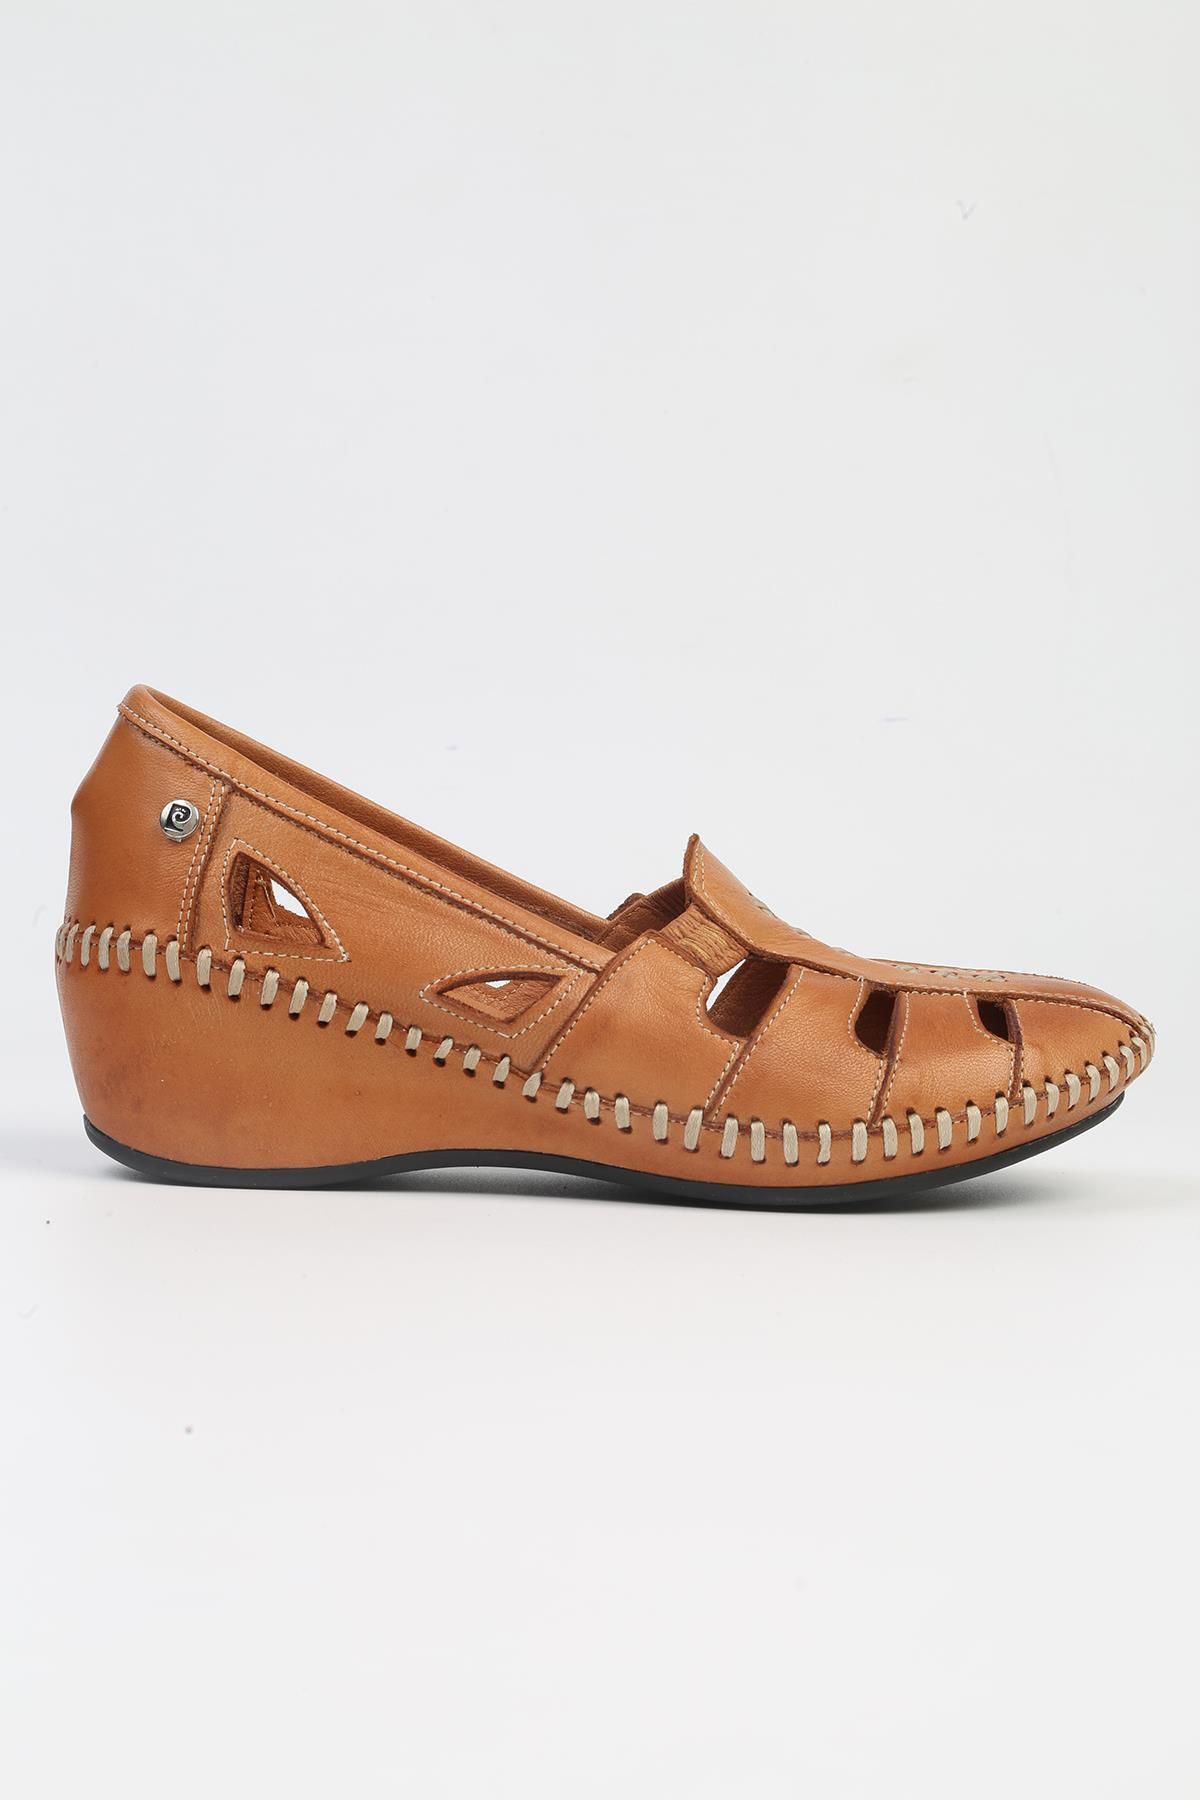 Pierre Cardin ® | PC-53023- 3963 Taba-Kadın Topuklu Günlük Ayakkabı